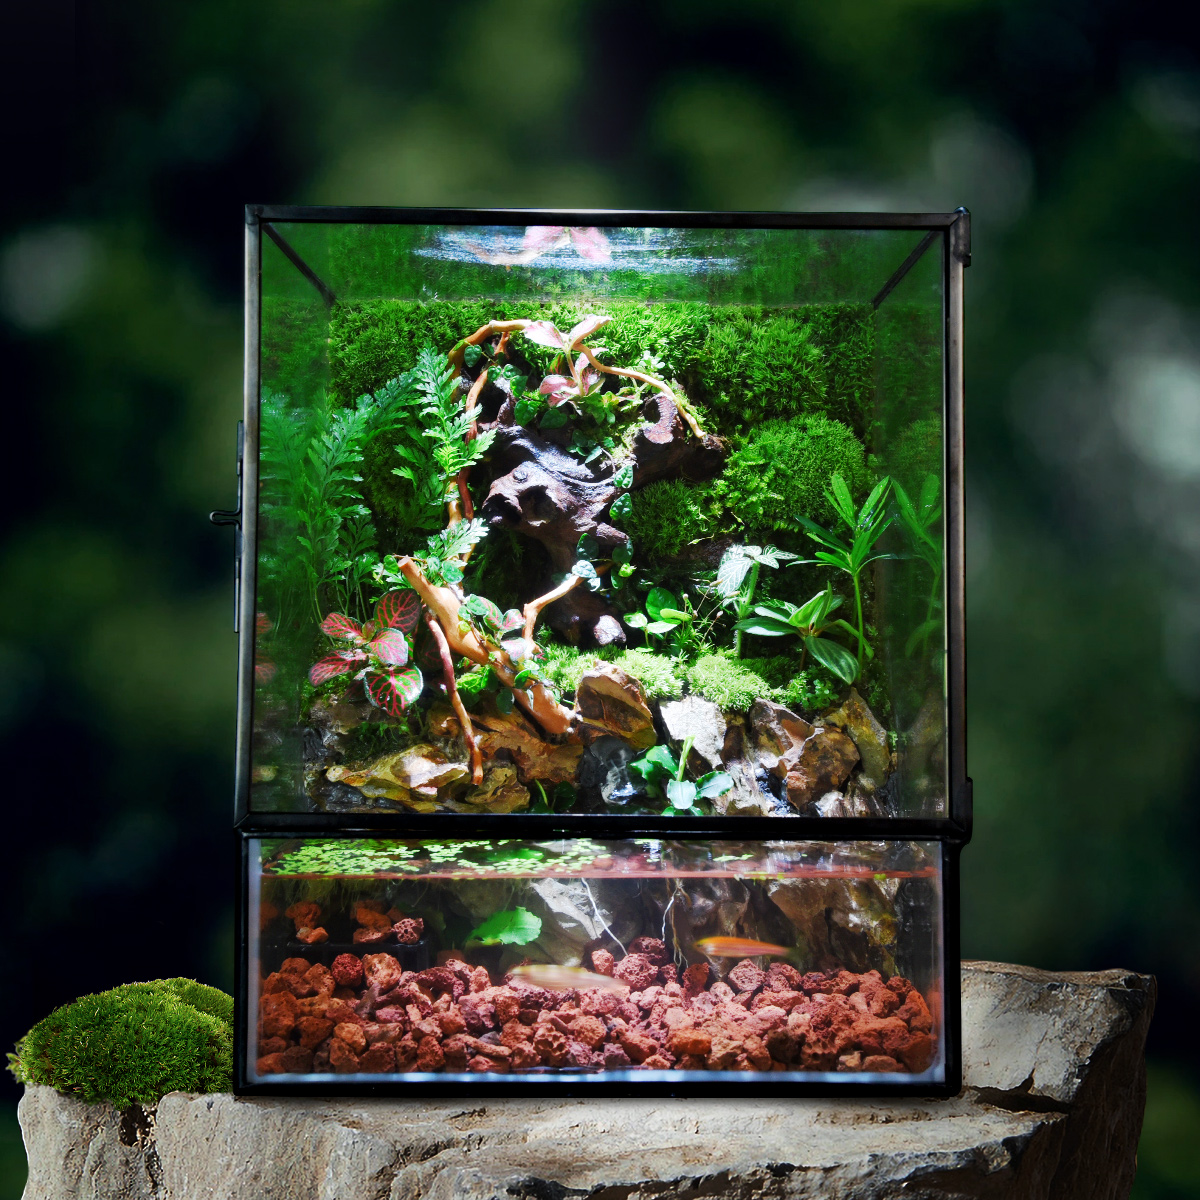 苔藓微景观雨林缸生态瓶桌面绿植创意水陆生态缸植物森林成品造景